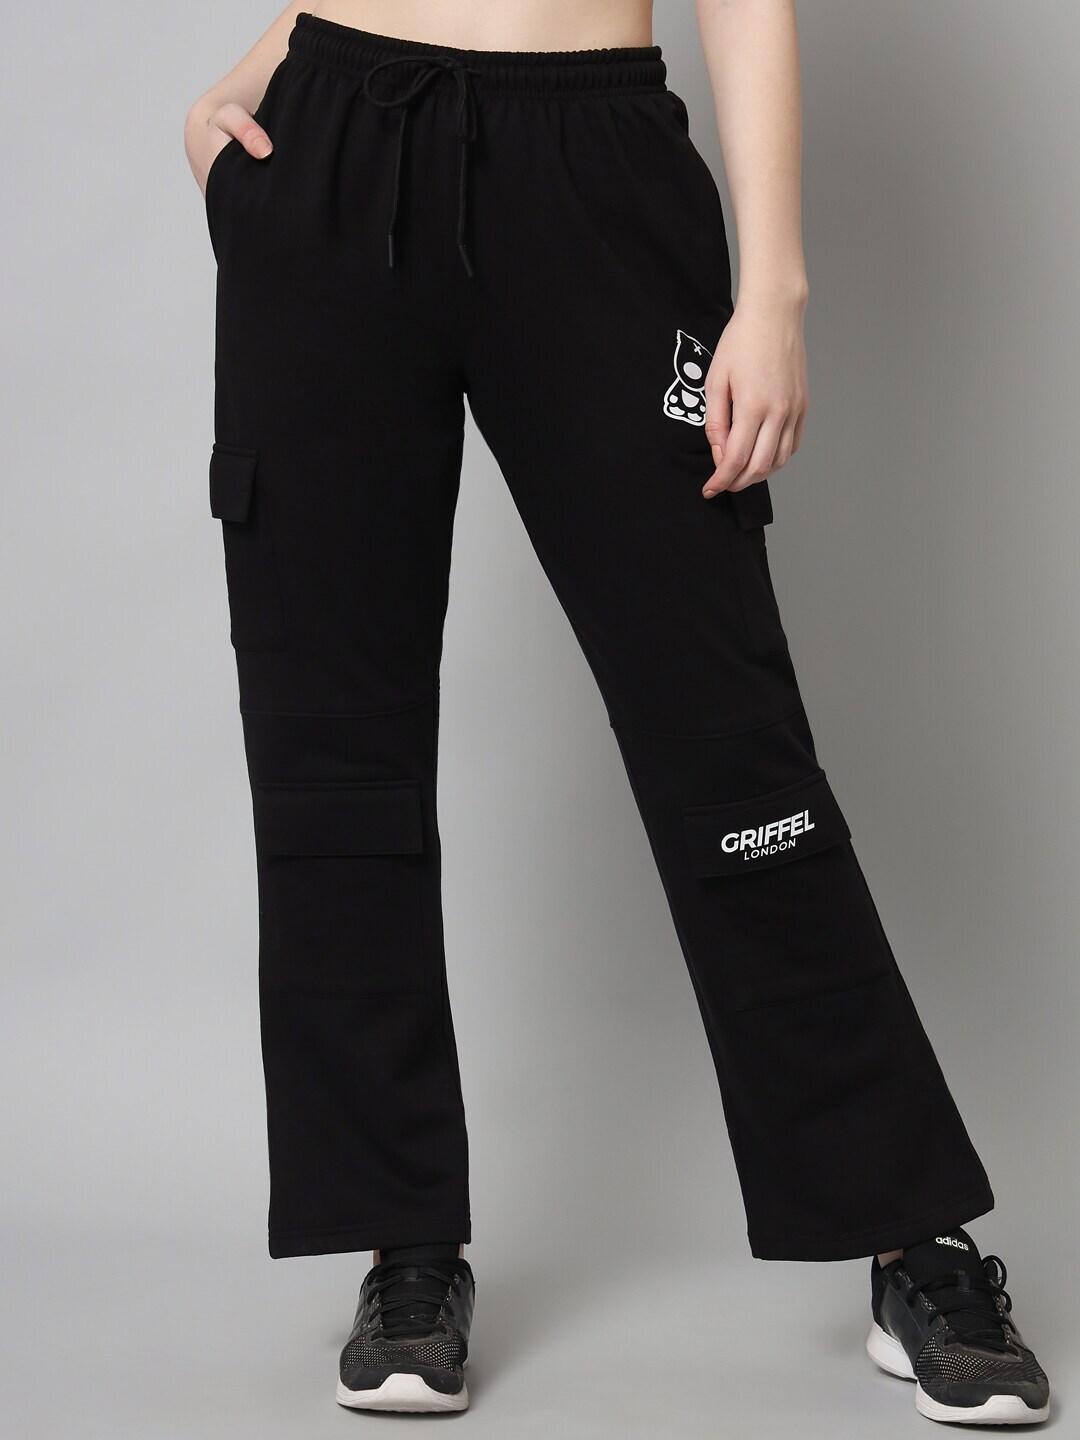 GRIFFEL Women Black Solid Cotton Track Pants